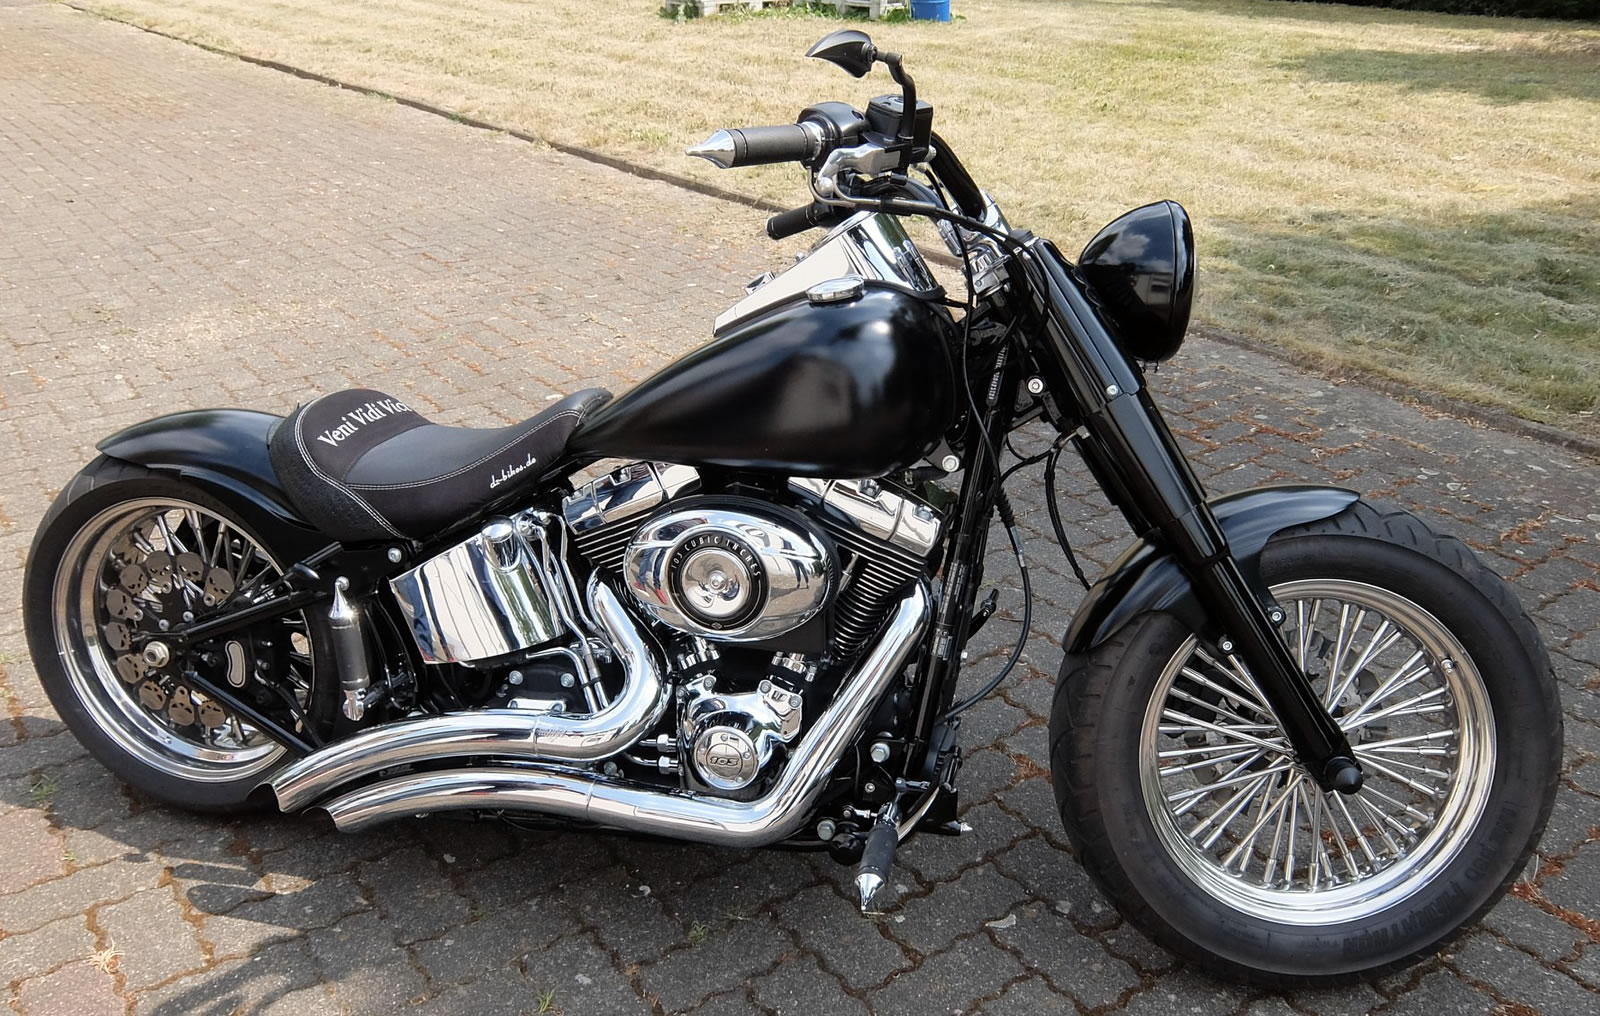 Polsterbeispiele von Harley-Davidson Bikes/Motorräder